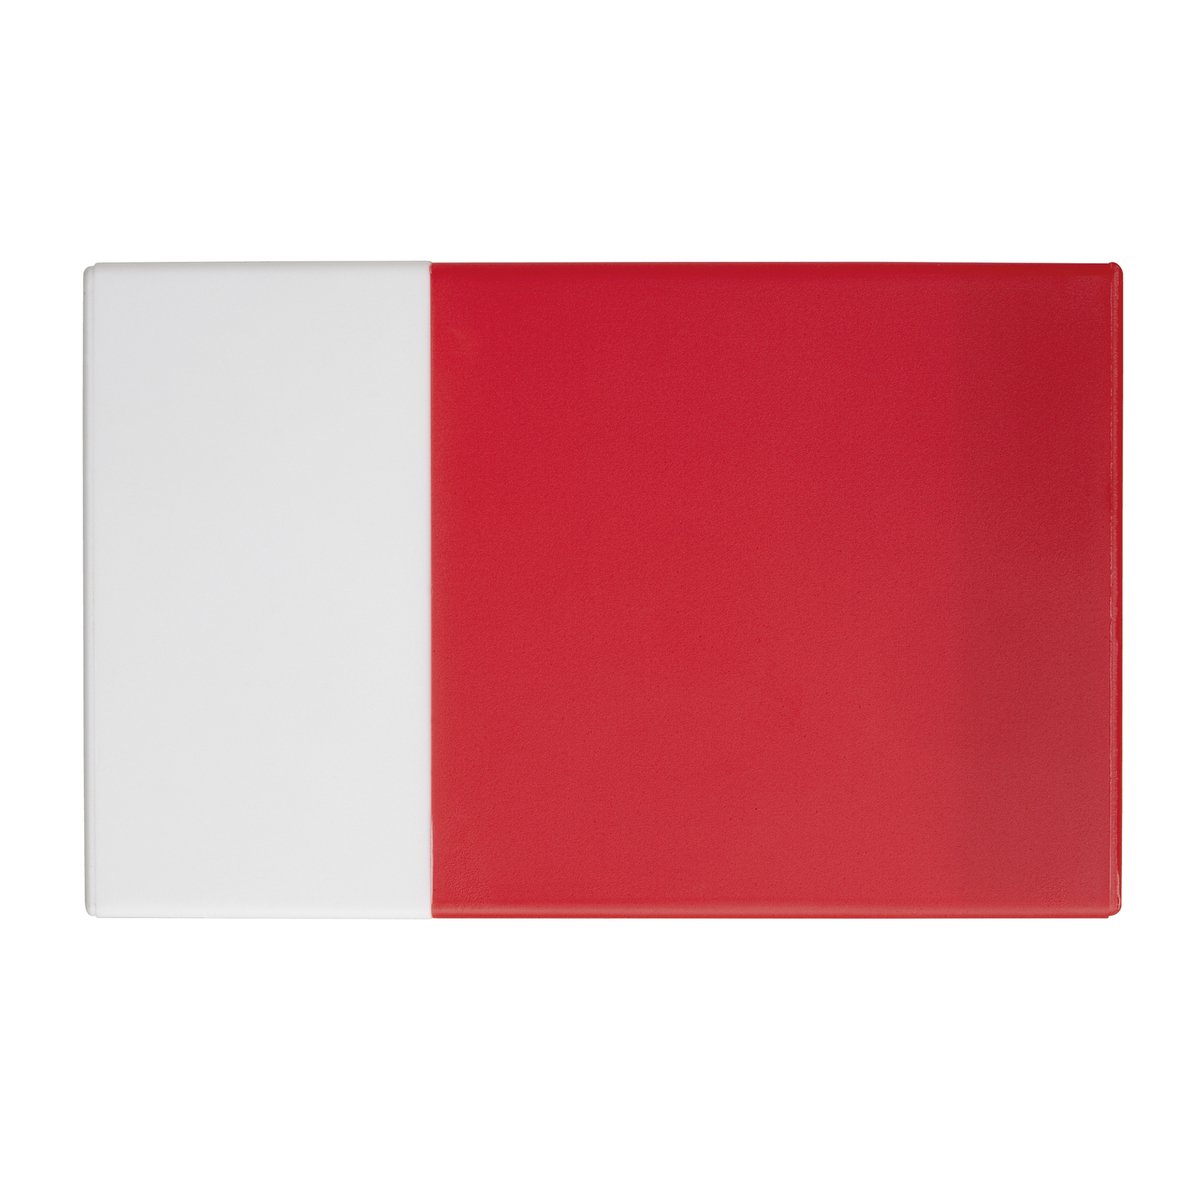 Kredit- und Visitenkartenbox REFLECTS-KELMIS weiß / rot